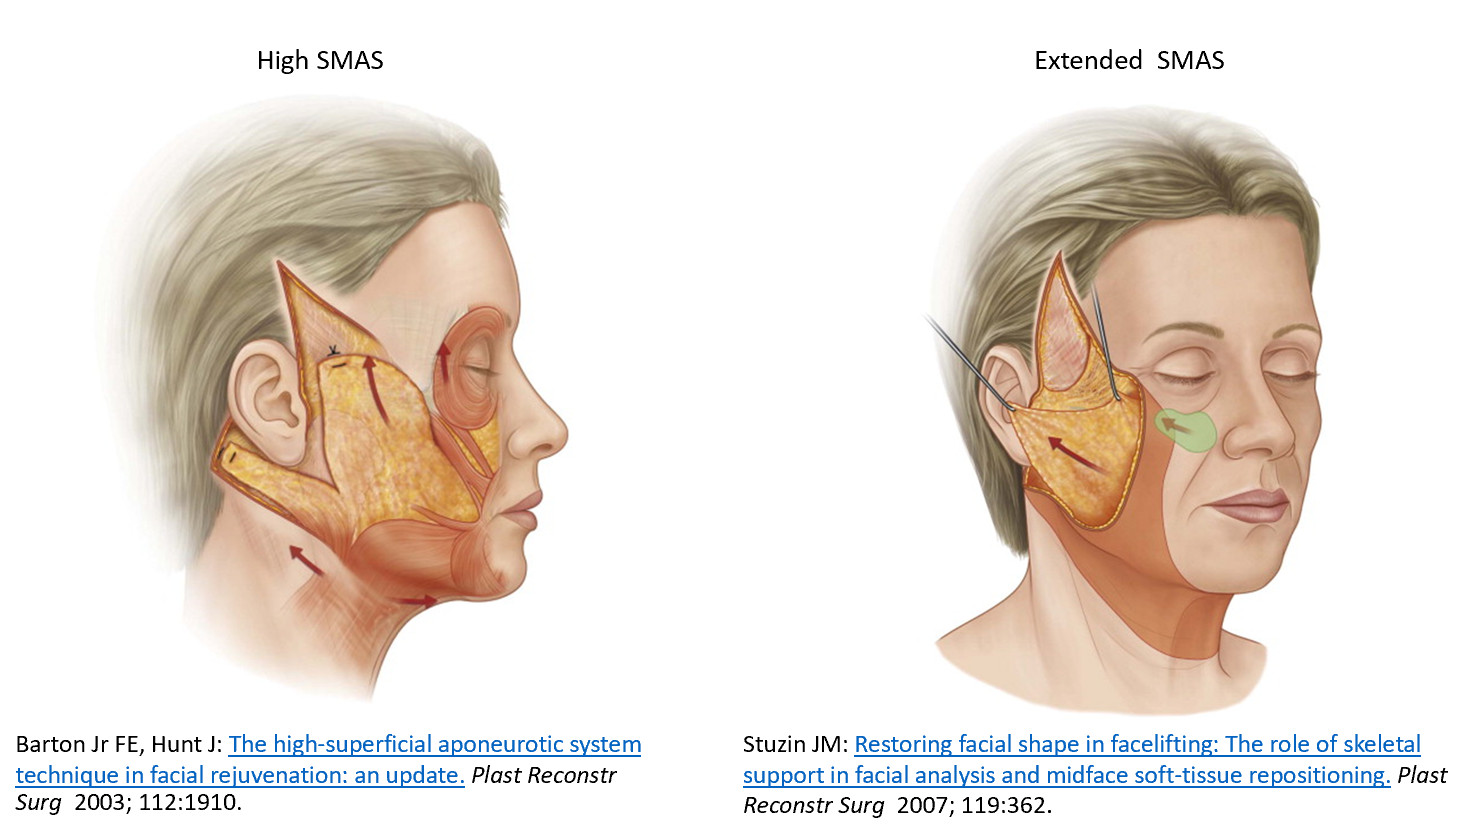 การดึงชั้น SMAS โดยมีการเลาะไปใต้ชั้น SMAS ทำให้มีการตัด ligament ใต้